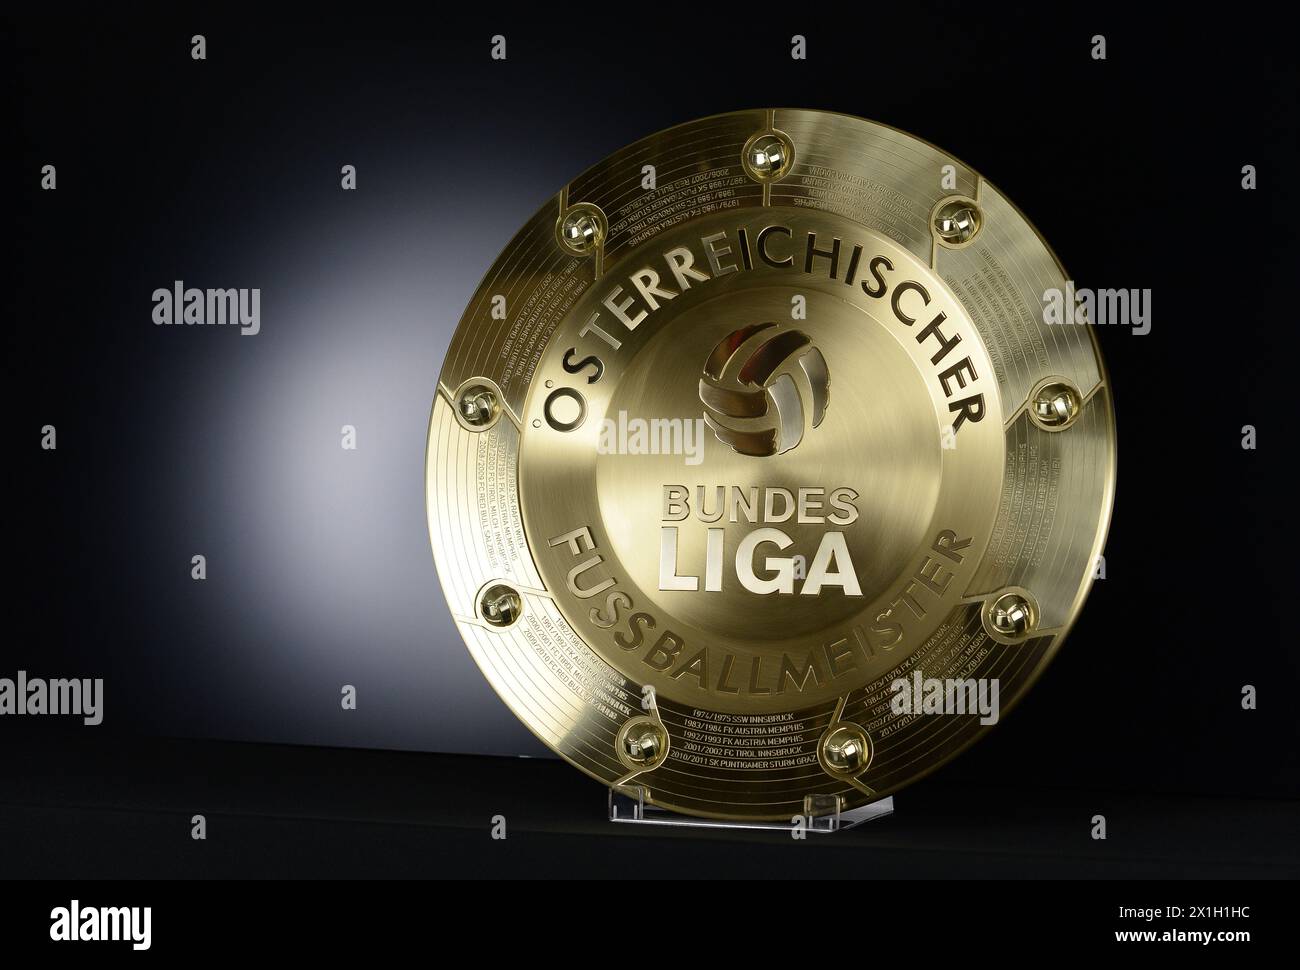 Faistenau - présentation du nouveau Trophée des Champions de la Bundesliga autrichienne de football au Guertlerei Schnitzhofer, Faistenau, Autriche le 2015/04/23. - 20150423 PD2489 - Rechteinfo : droits gérés (RM) Banque D'Images